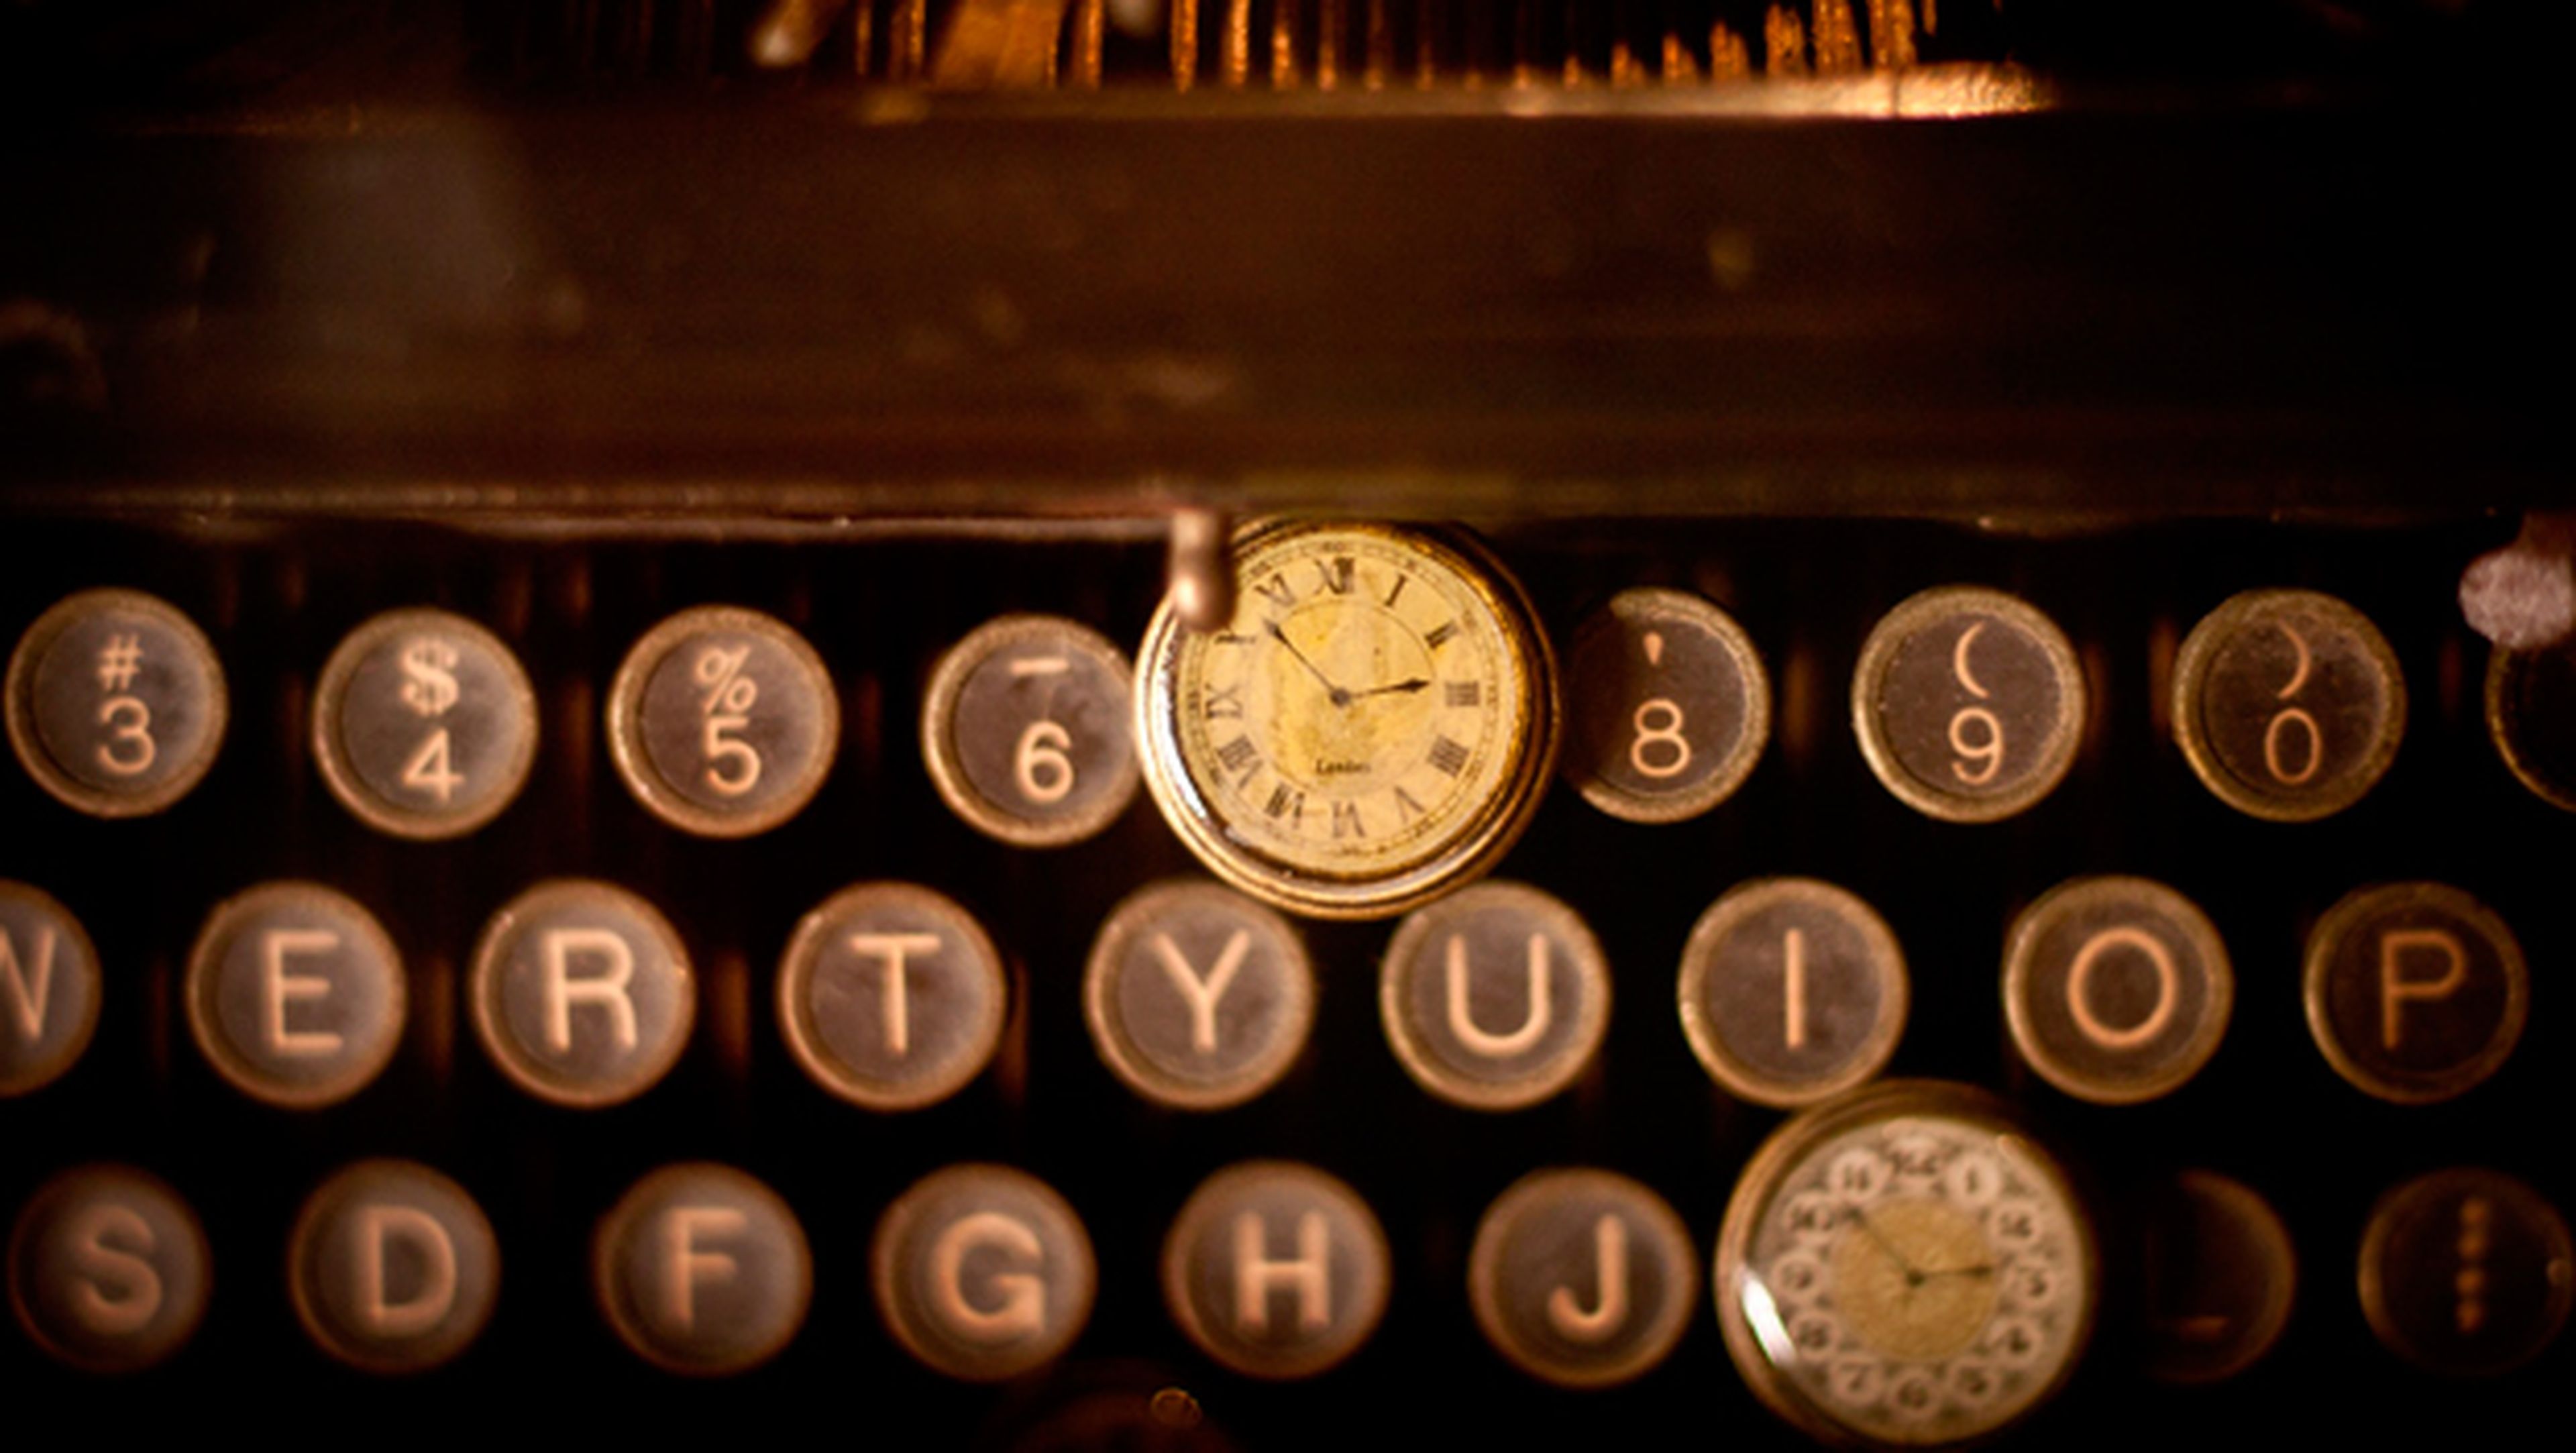 Tecnologías obsoletas que se utilizan a día de hoy: máquina de escribir